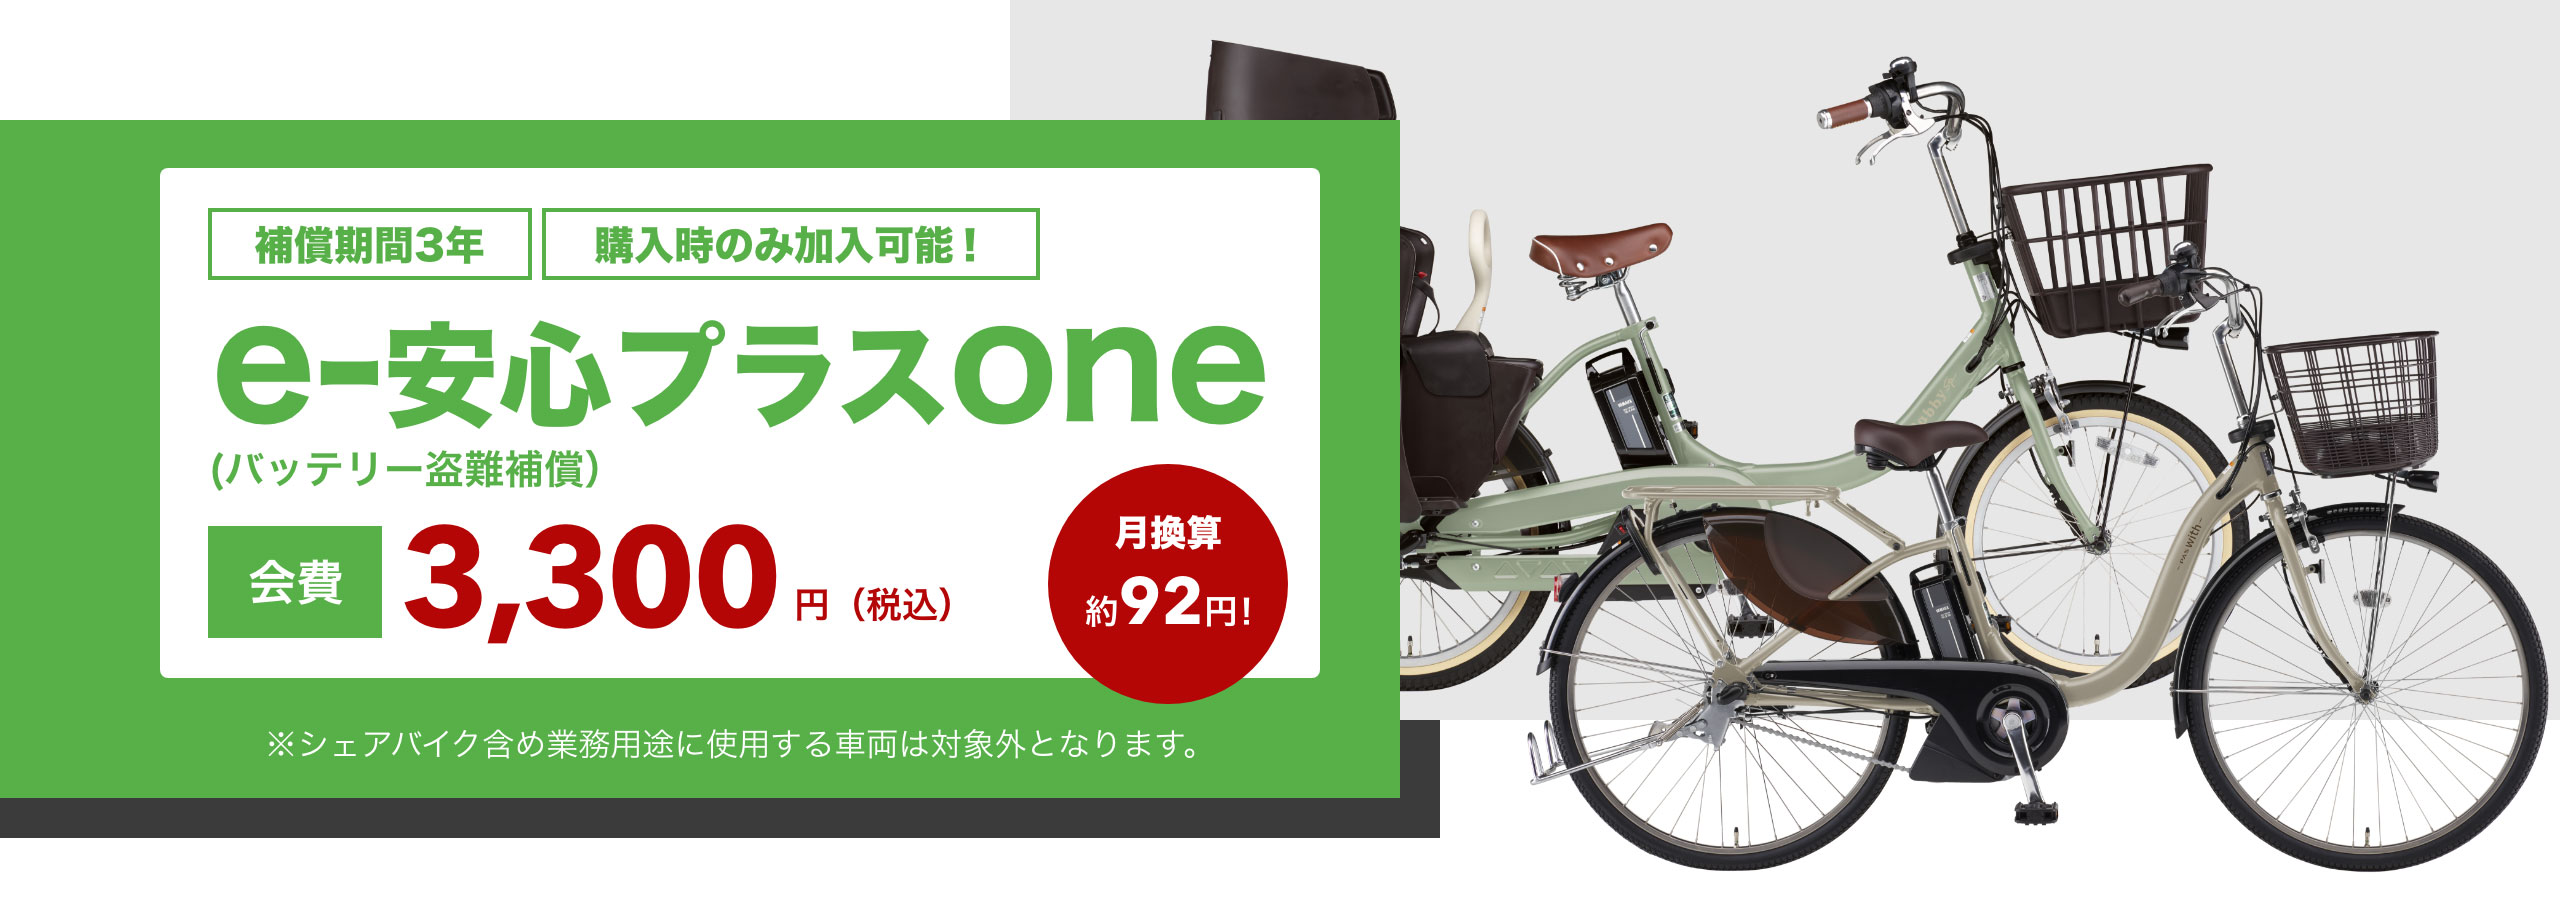 バッテリー盗難補償サービス「e-安心プラスone」のご案内 - 電動自転車